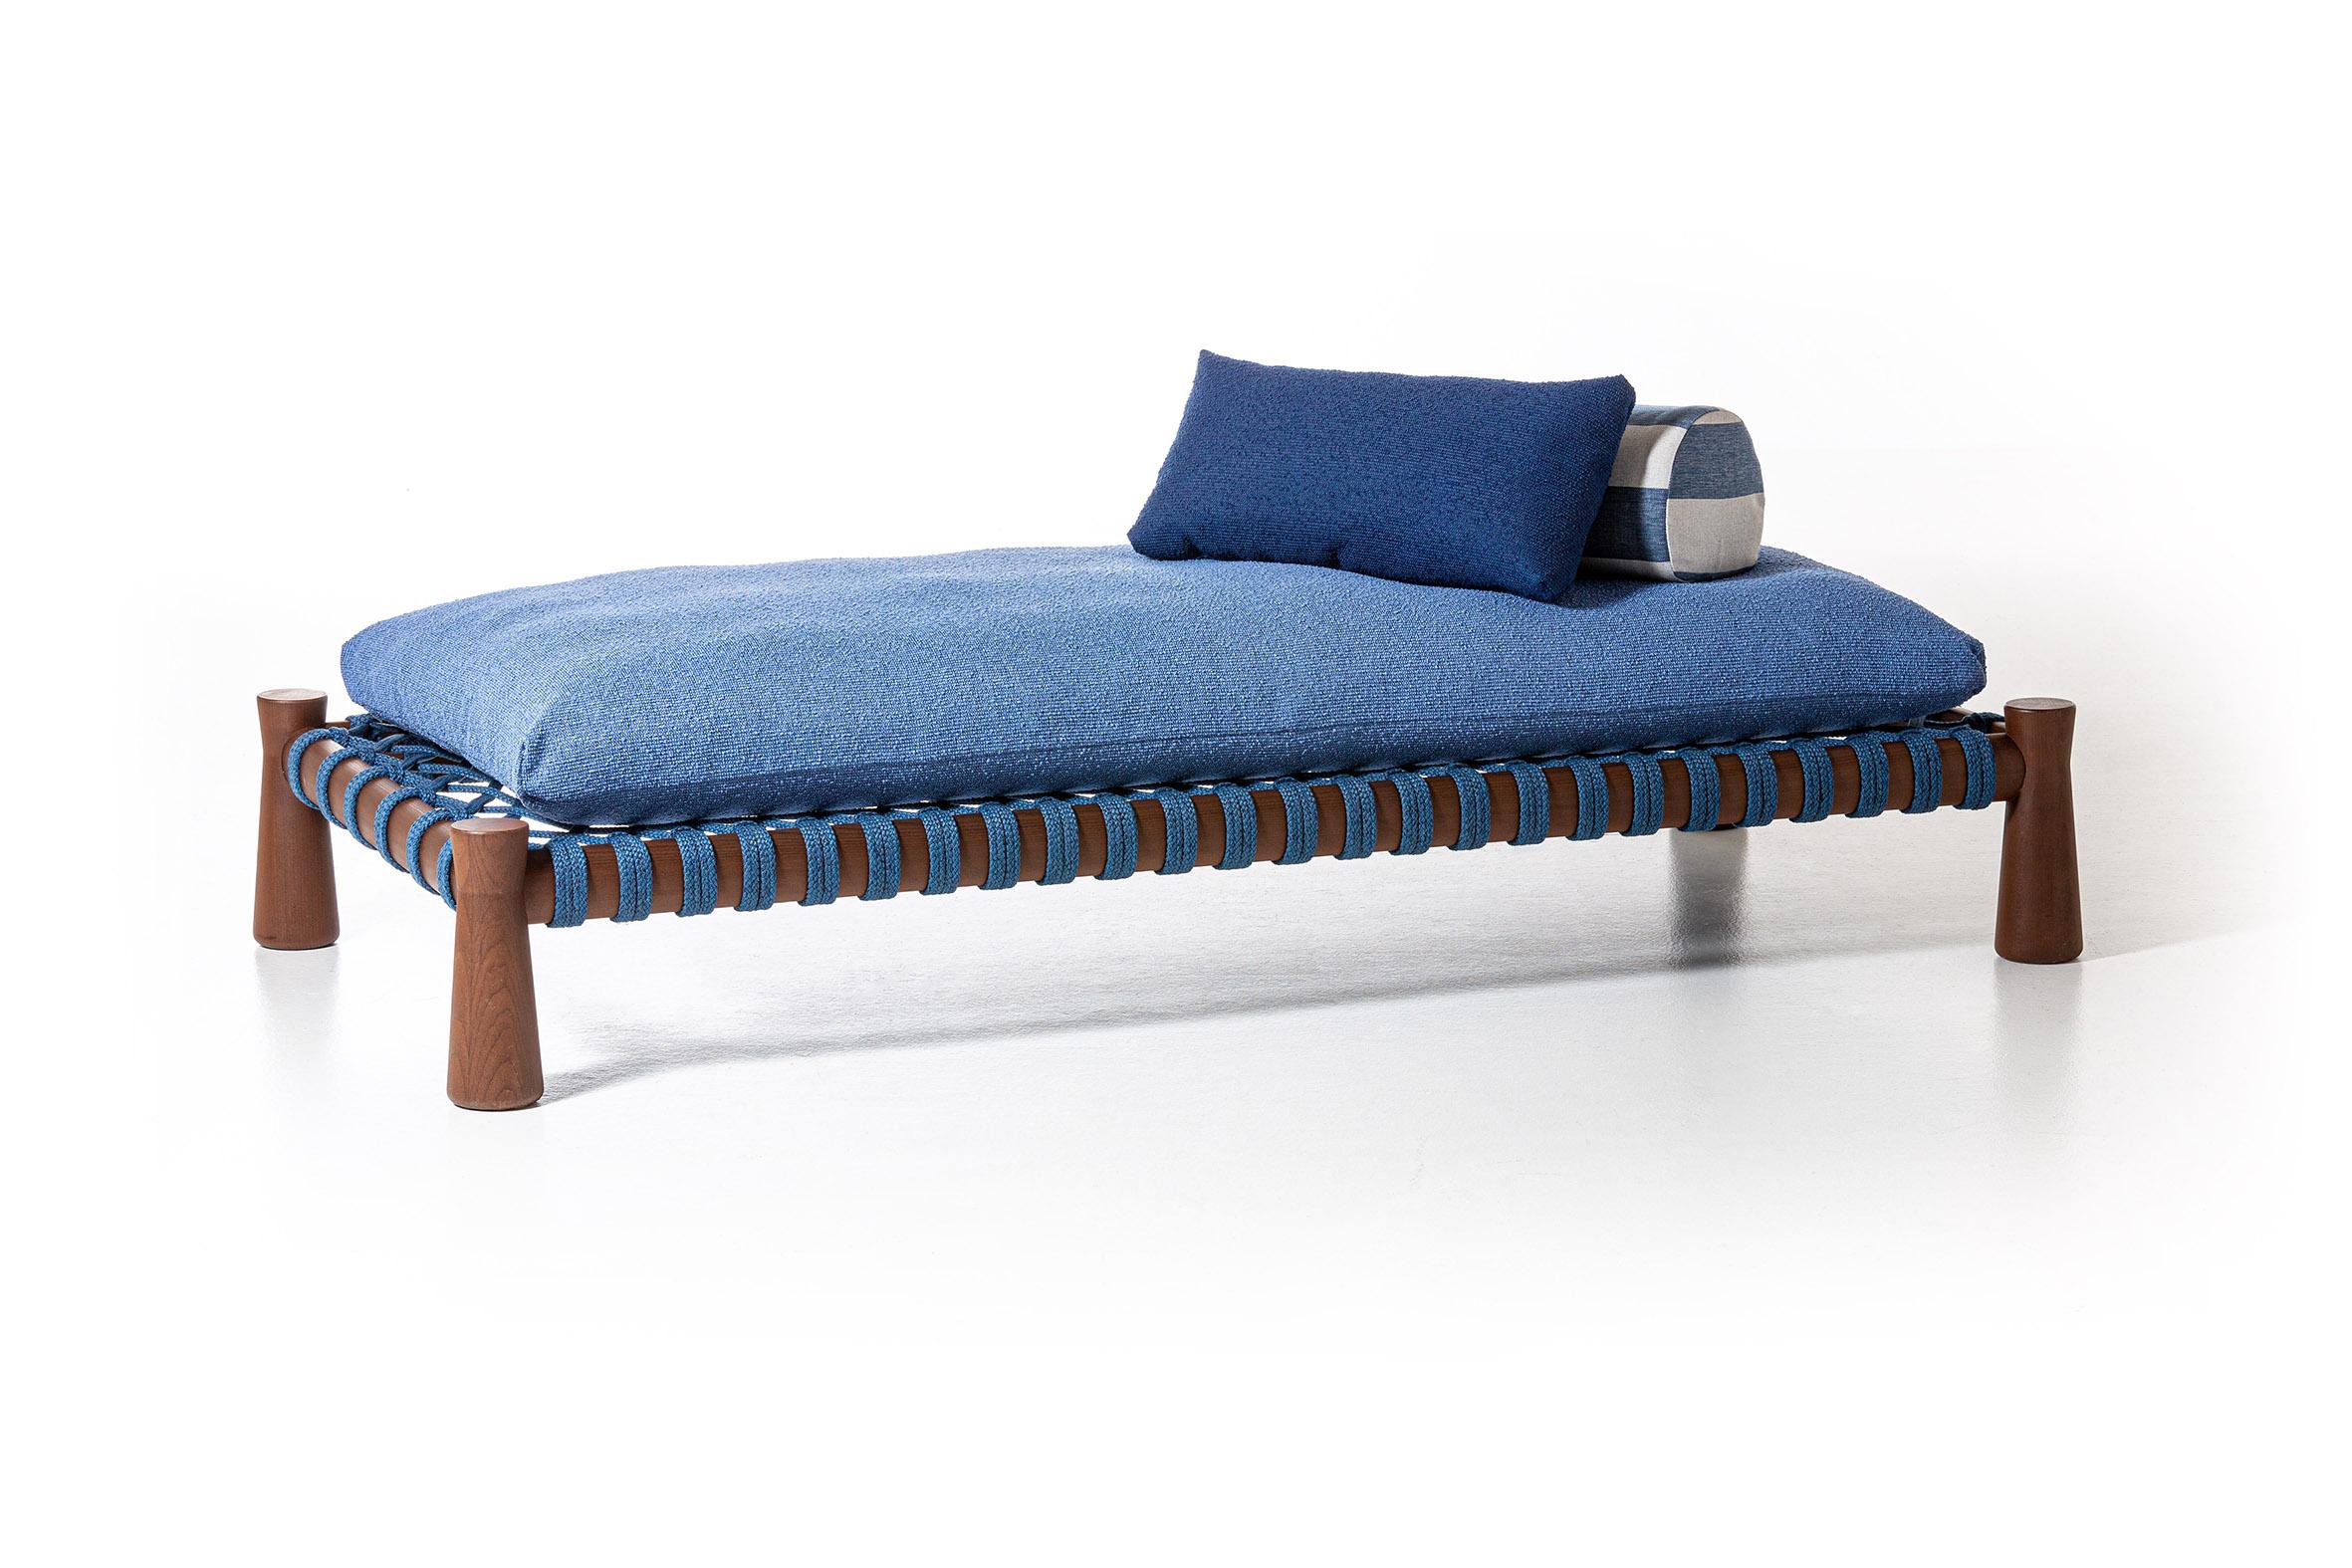 Das Charpoy, ein traditionelles, niedriges und geräumiges indisches Bett, wird von Chiara Andreatti durch die Verwendung von Seilen in den Farben Natur, Rot und Blau neu interpretiert, die von Hand in die Struktur aus für den Außenbereich